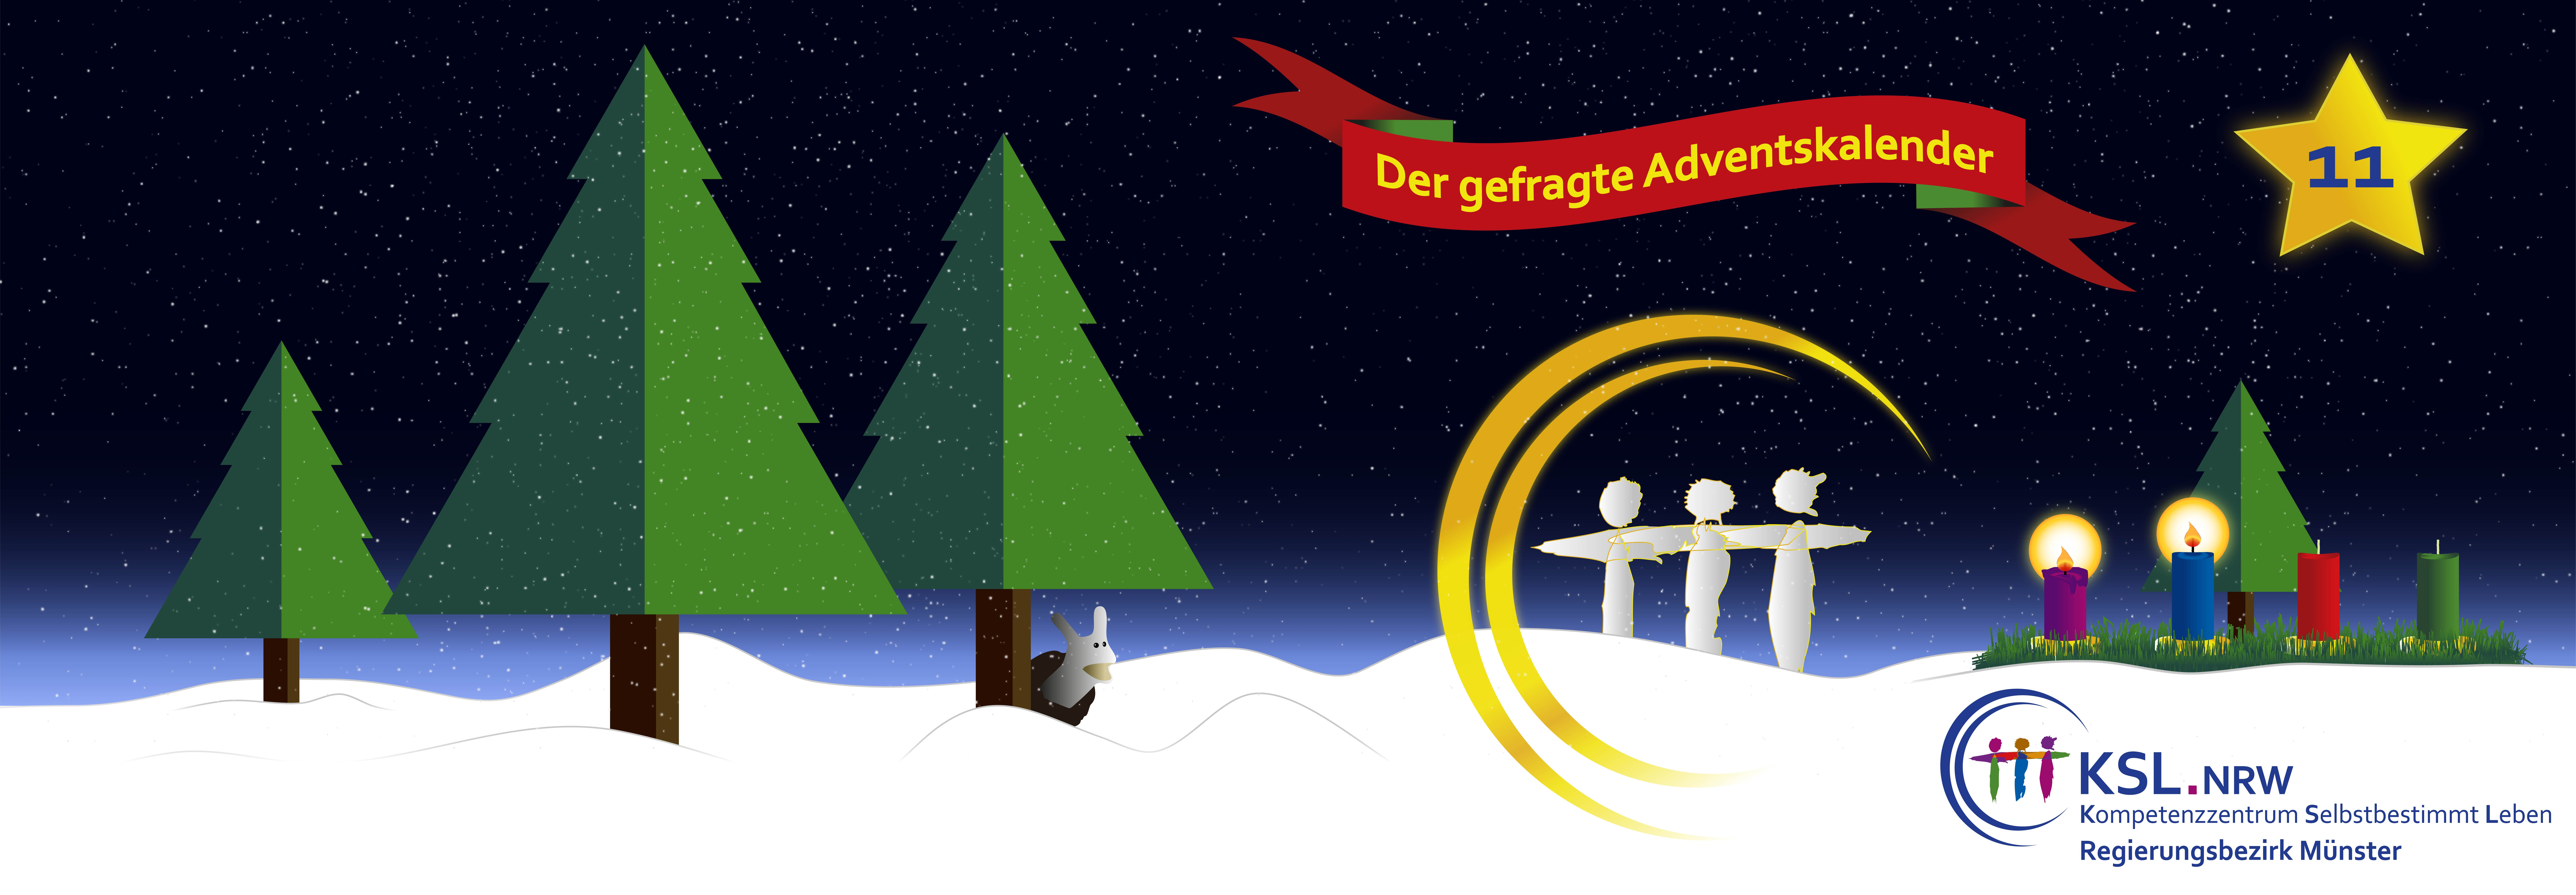 Der gefragte Adventskalender - KSL Münster - weihnachtlicher Hintergrund - vier Tannenbäume - ein Stern mit der Nummer 11 - ein Adventskranz mit vier Kerzen